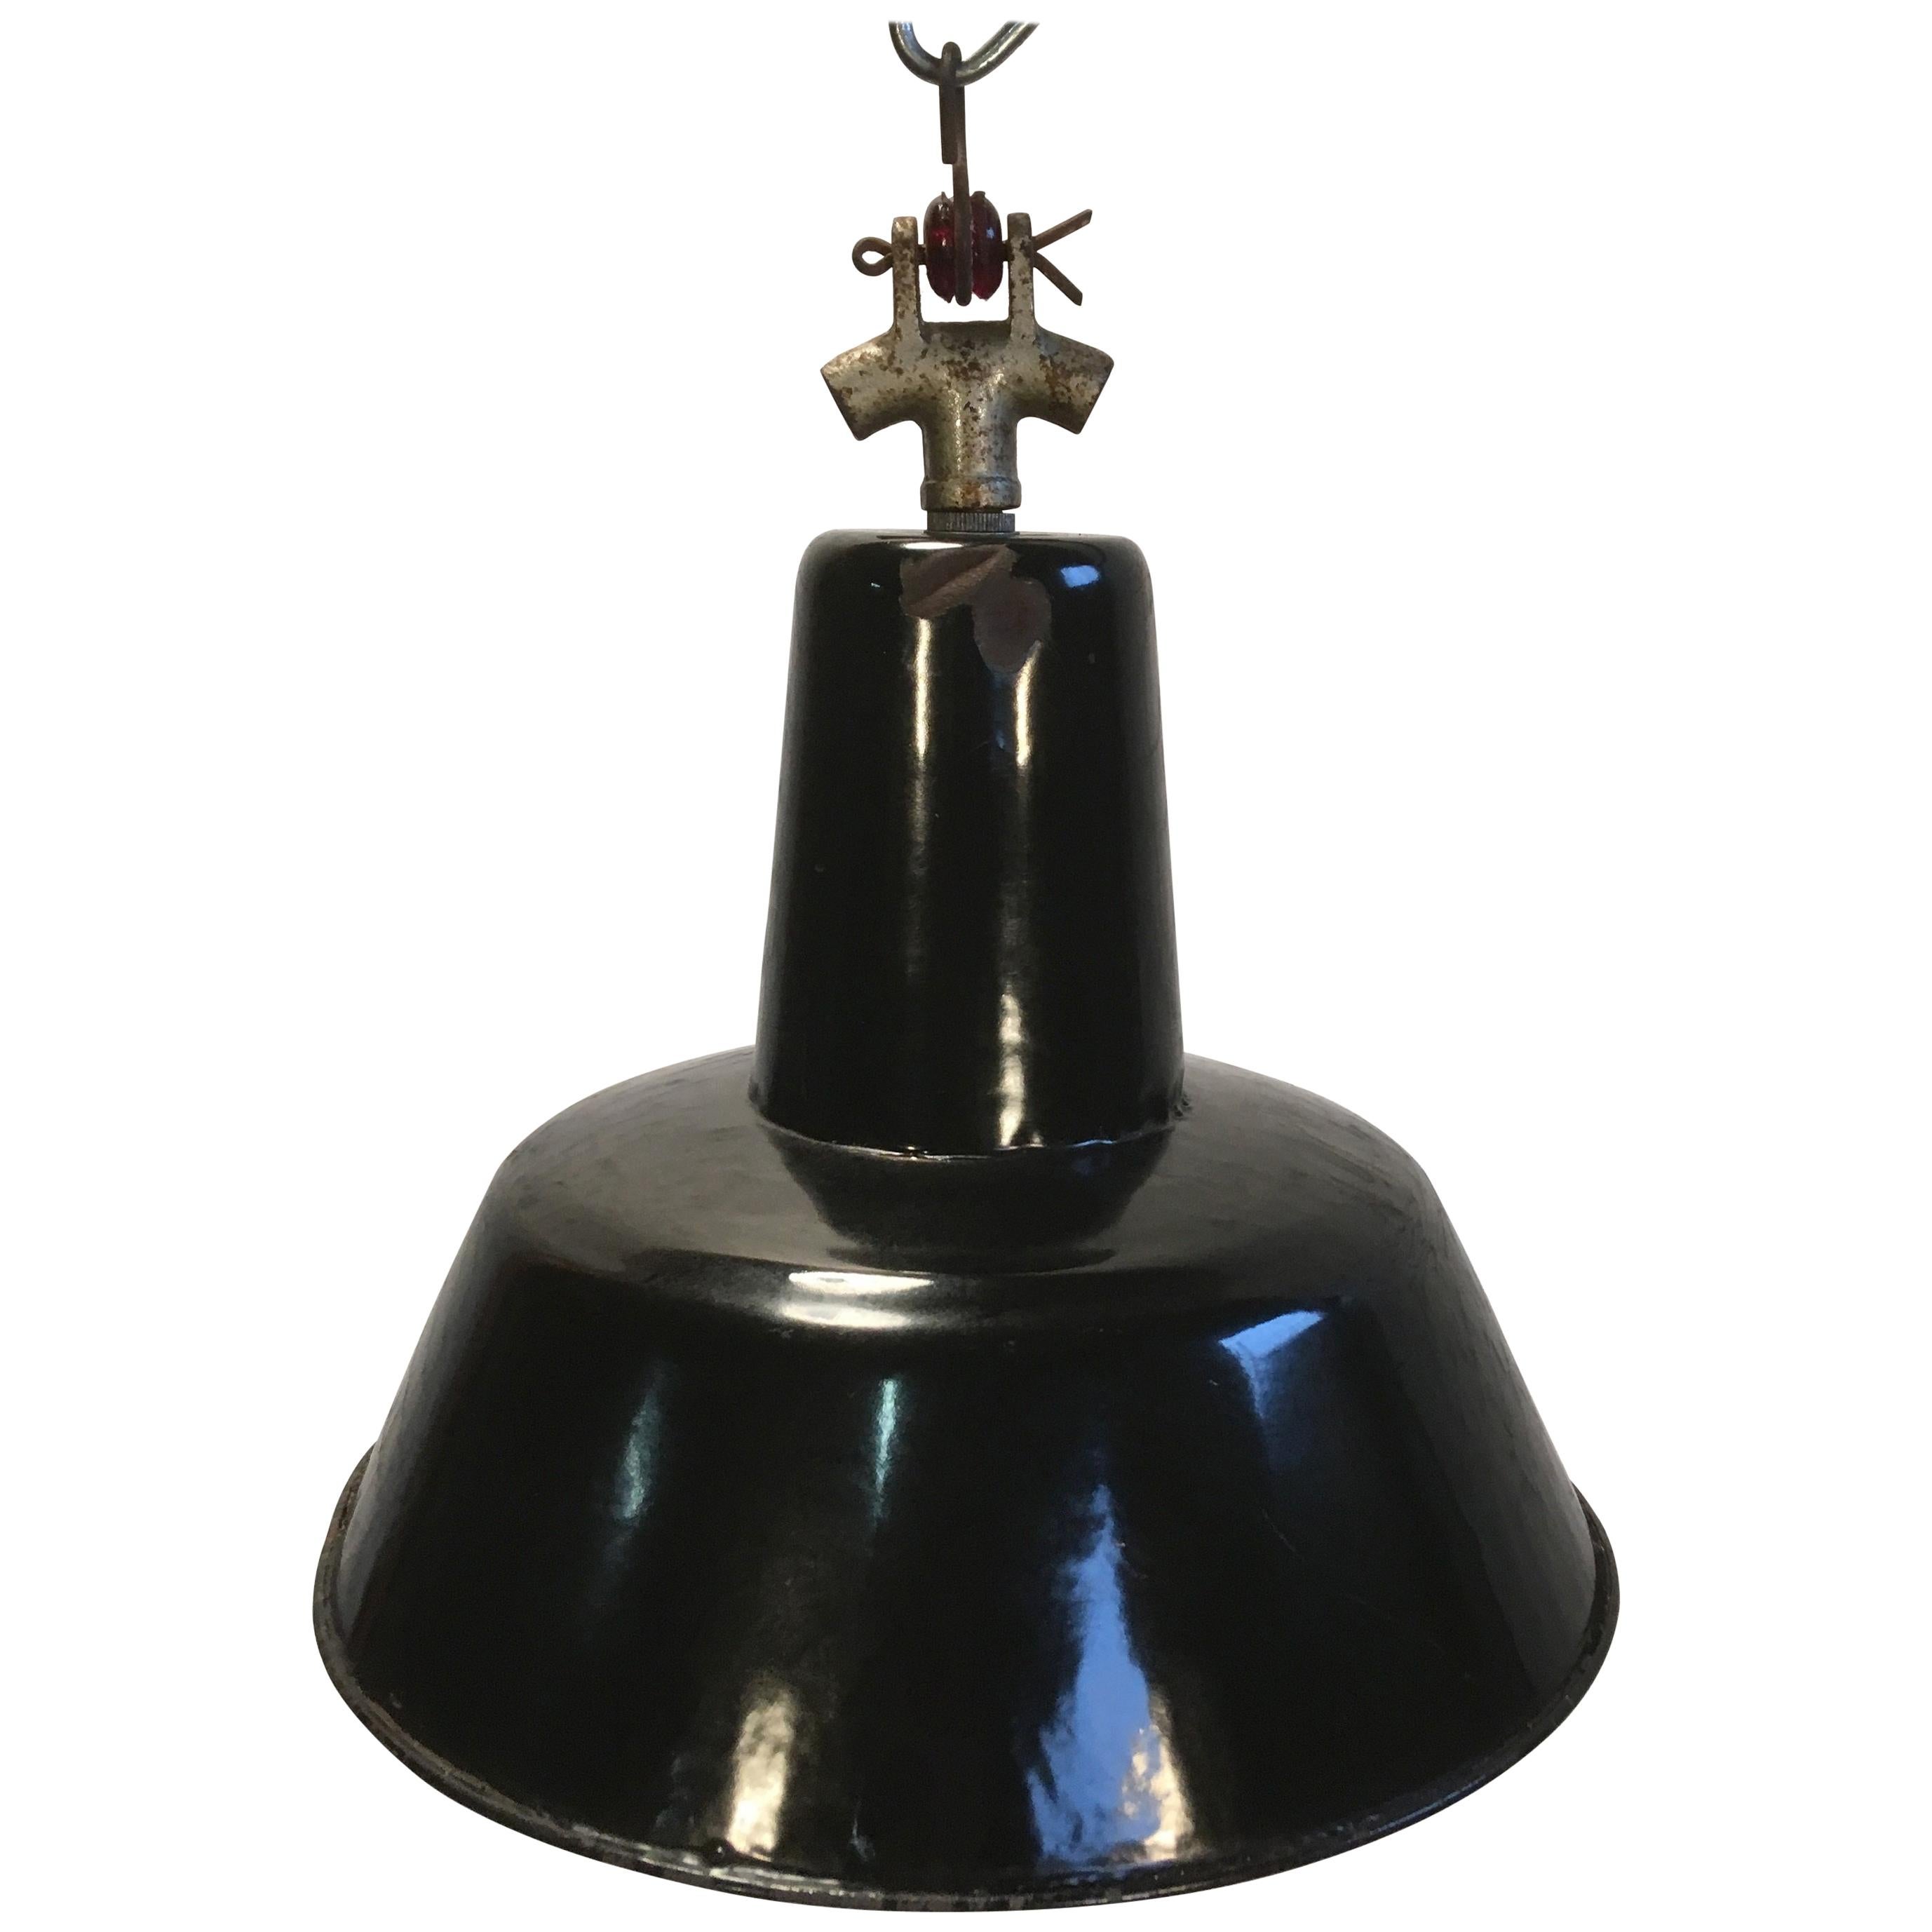 Vintage Black Industrial Ceiling Lamp, 1930s